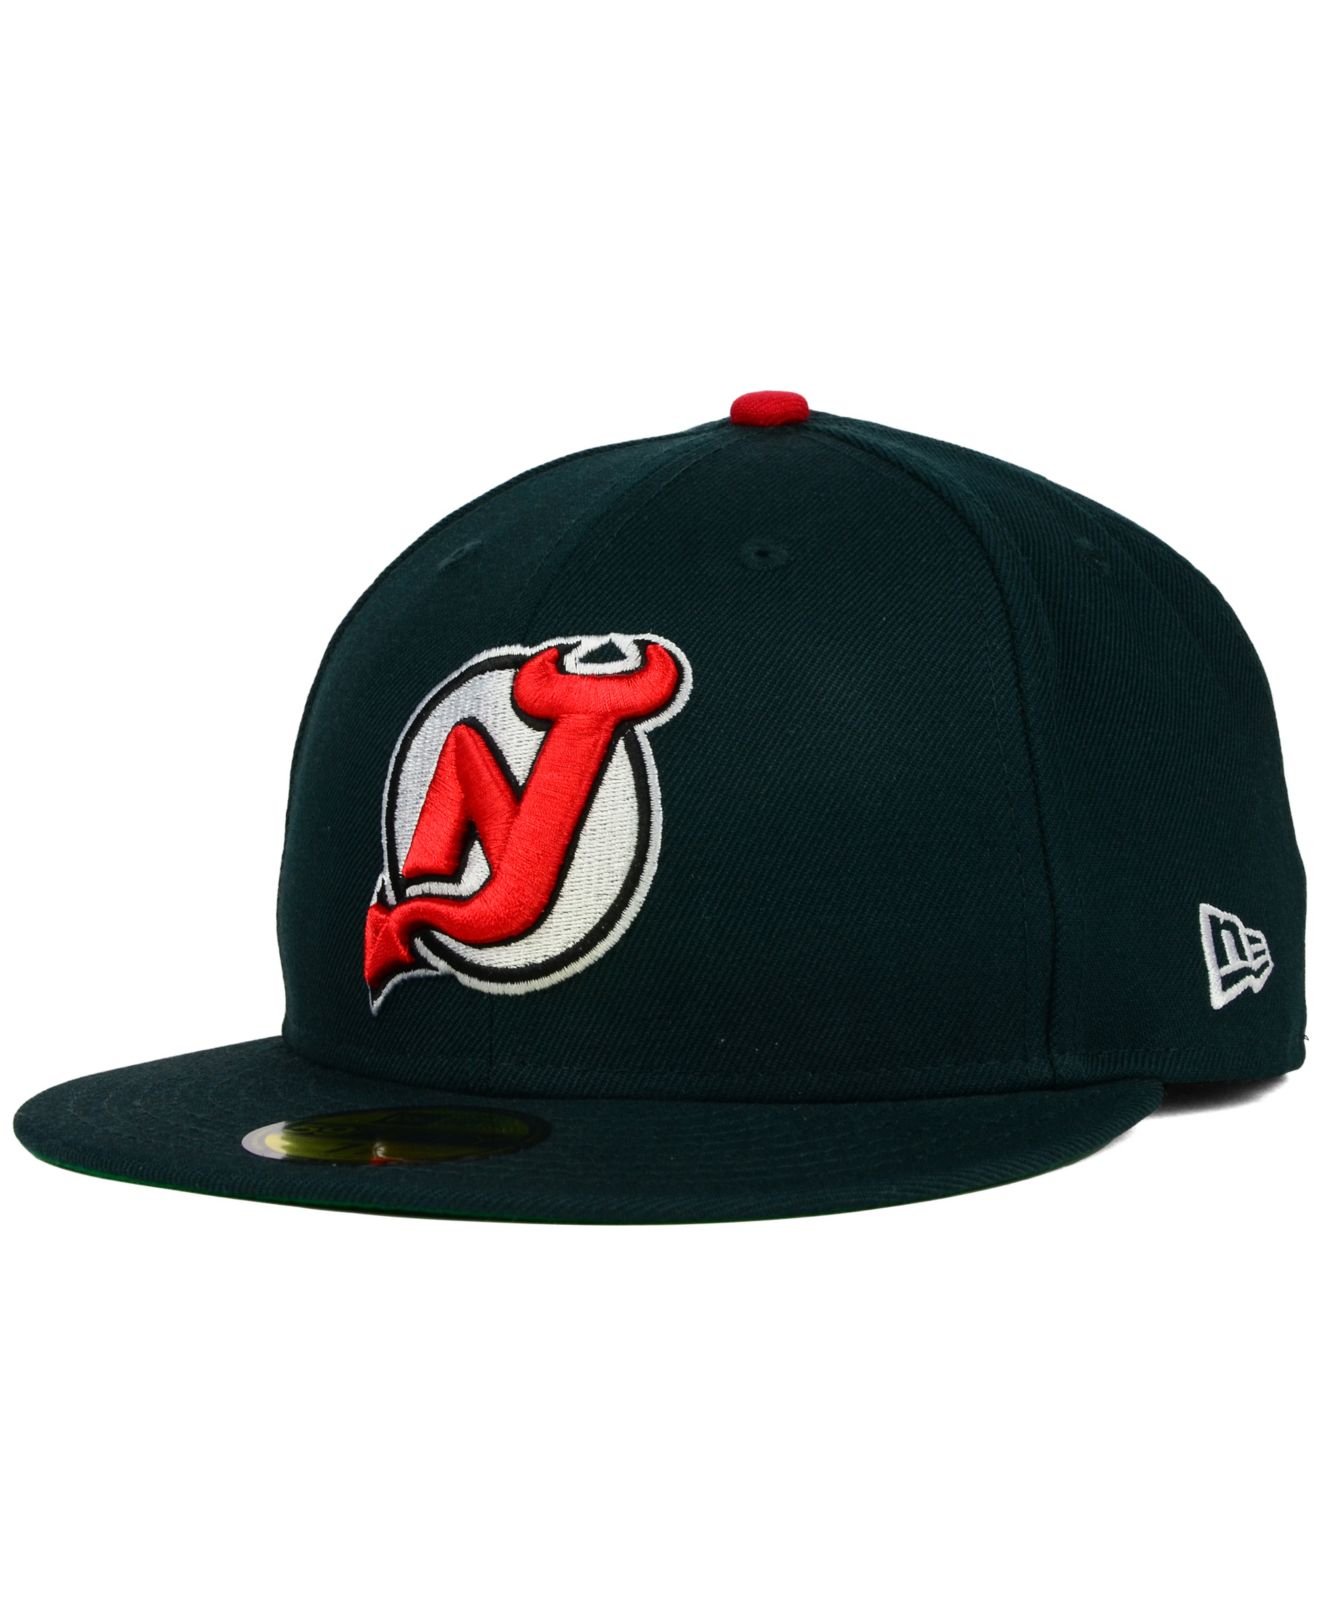 New Jersey Devils Vintage Hat  Hats vintage, New jersey devils, Hat shop